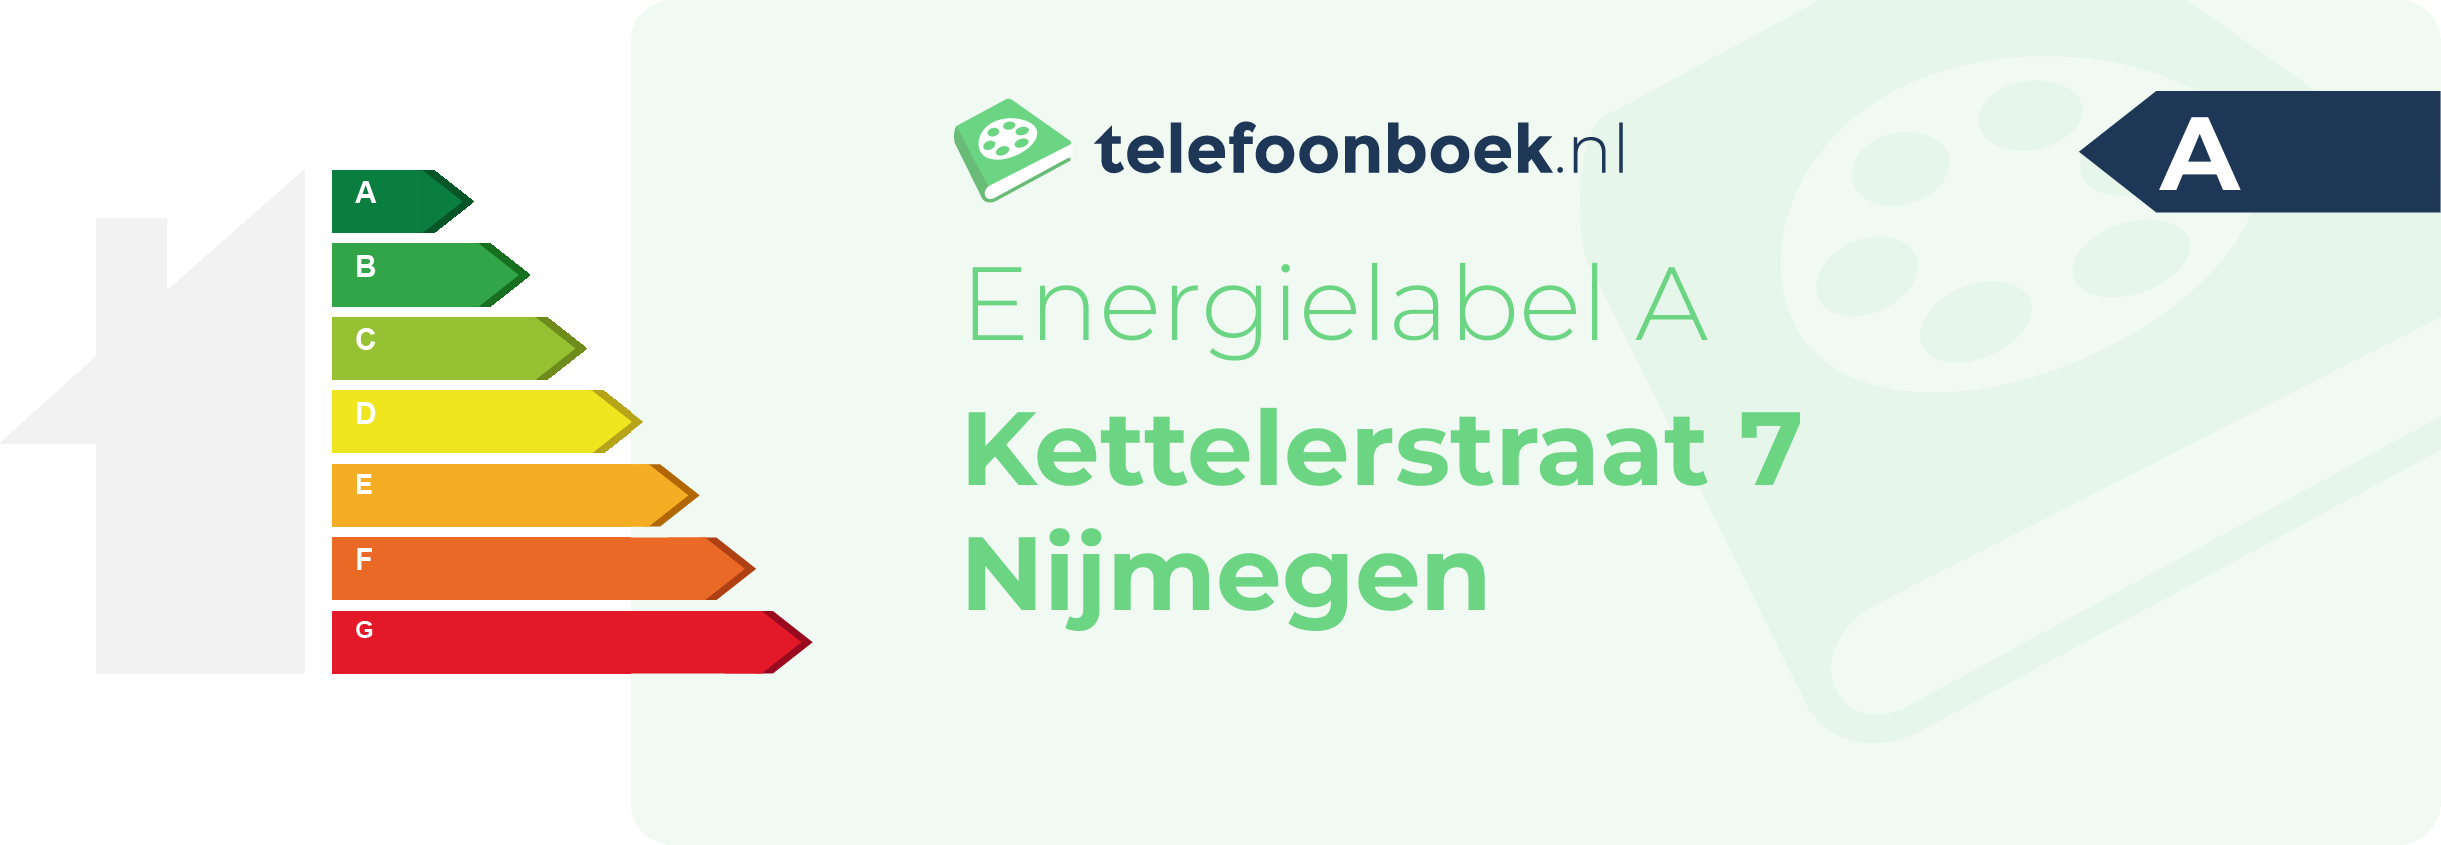 Energielabel Kettelerstraat 7 Nijmegen